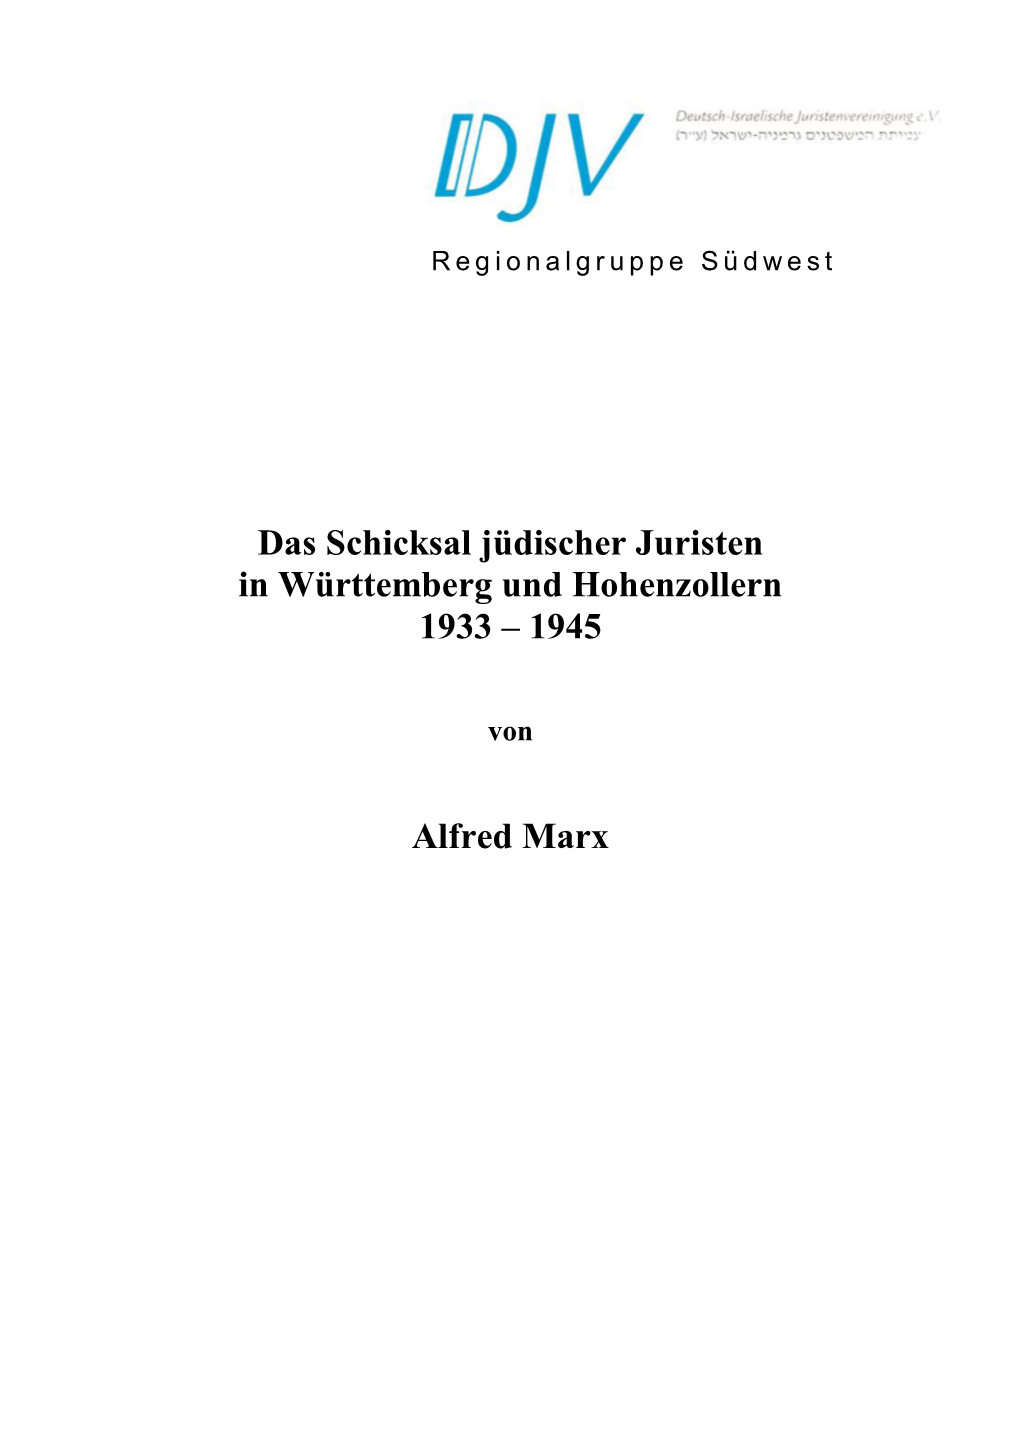 Das Schicksal Jüdischer Juristen in Württemberg Und Hohenzollern 1933 – 1945